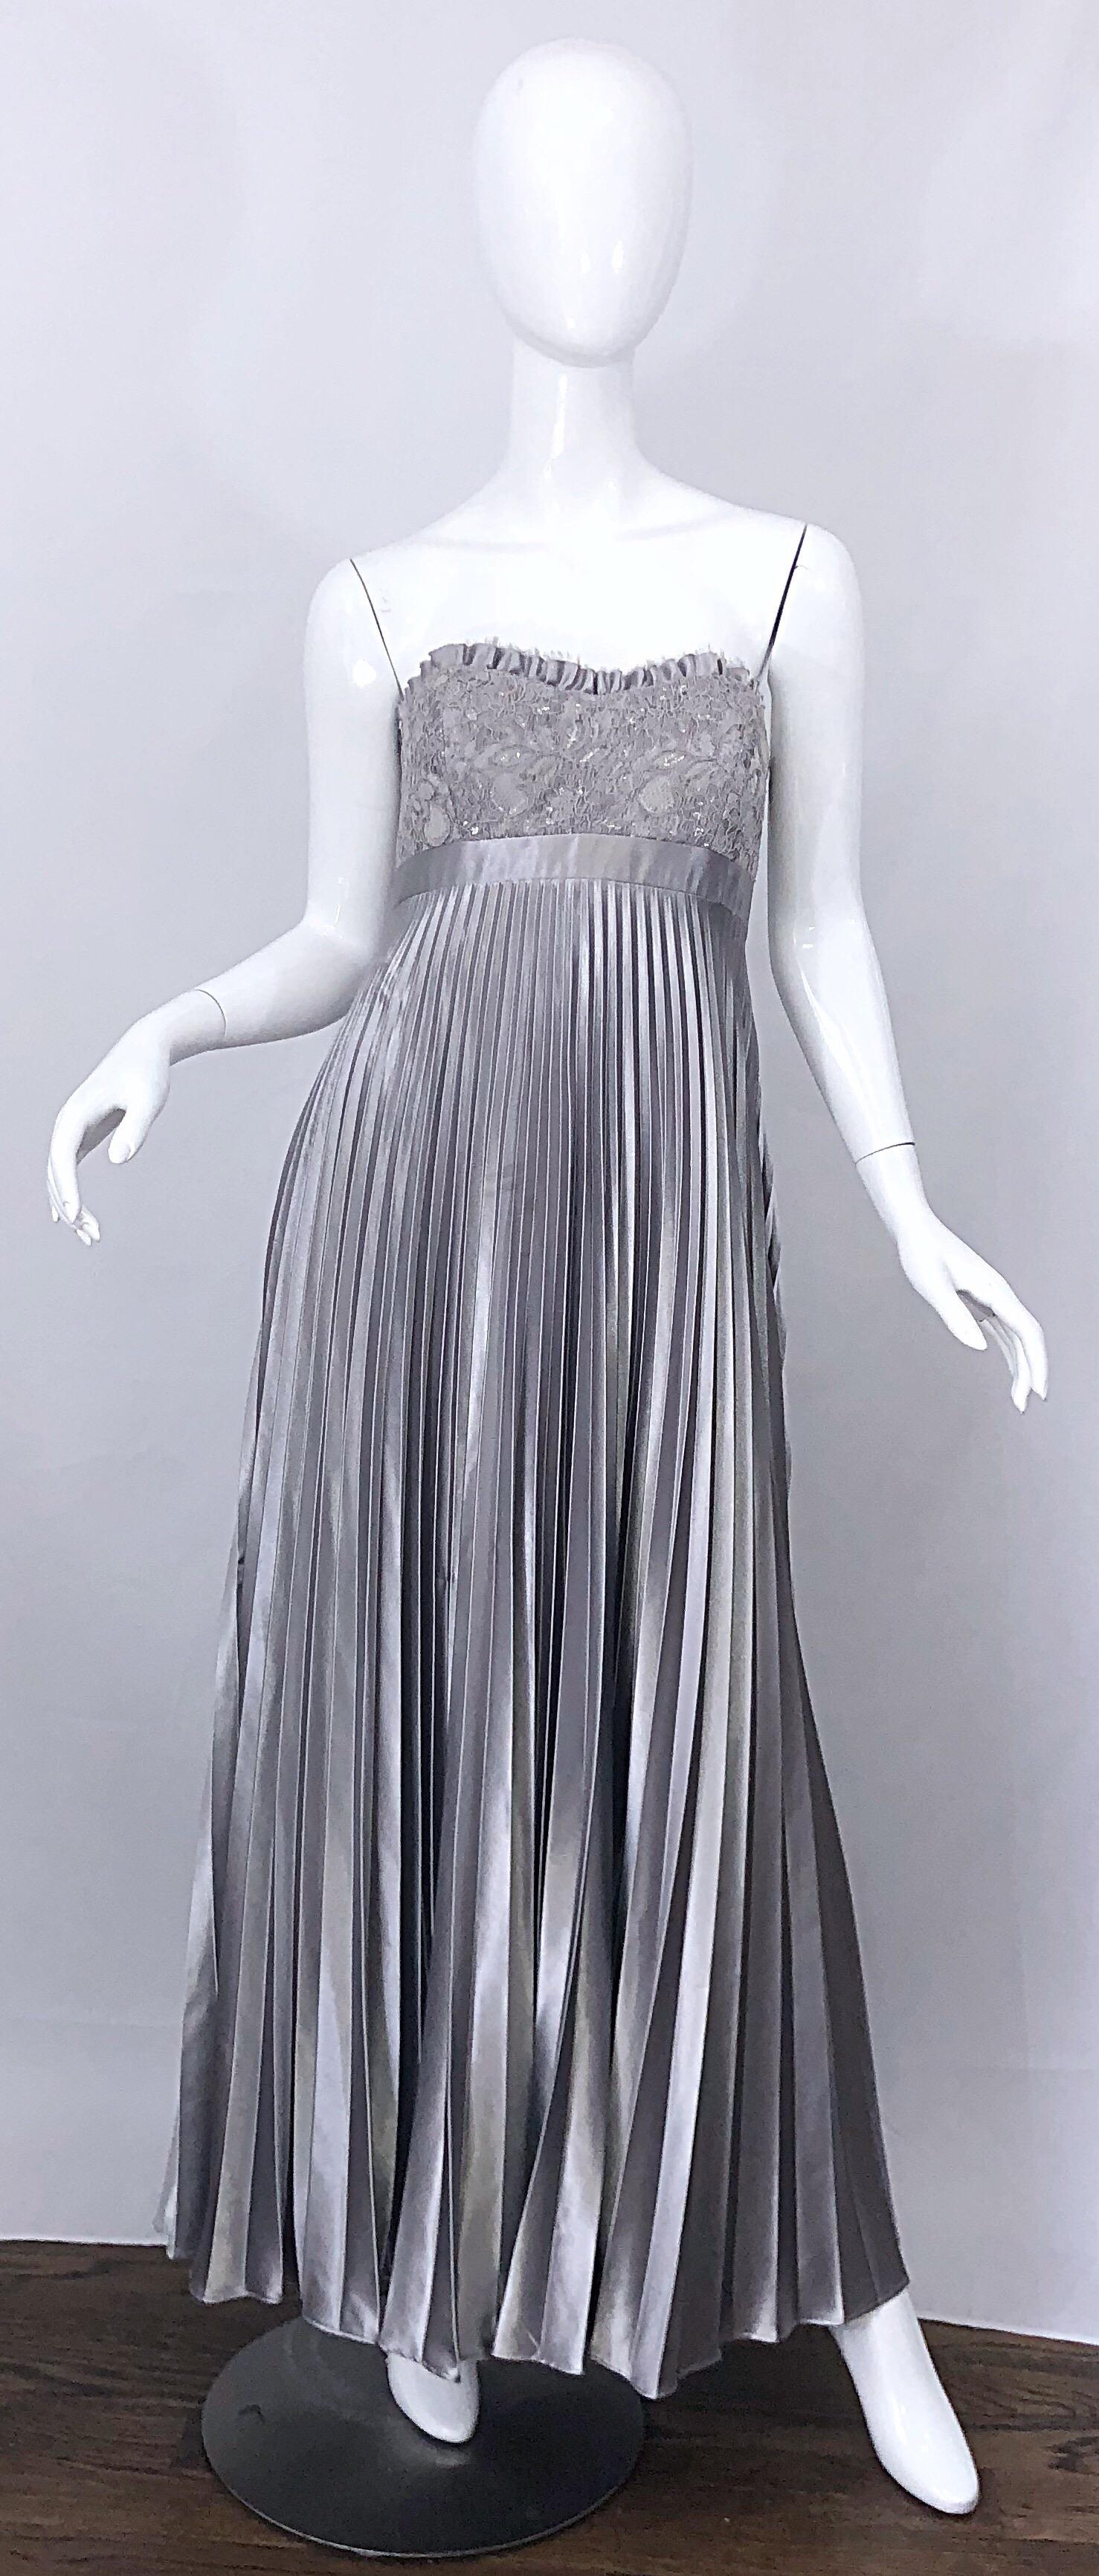 Wunderschönes vintage 90er Jahre BADGLEY MISCHKA Couture Qualität metallisch silber grau trägerloses Abendkleid! Das Oberteil ist aus Spitze gefertigt und mit silbernen Pailletten bestickt, die von Hand aufgenäht sind. Schmeichelnder und